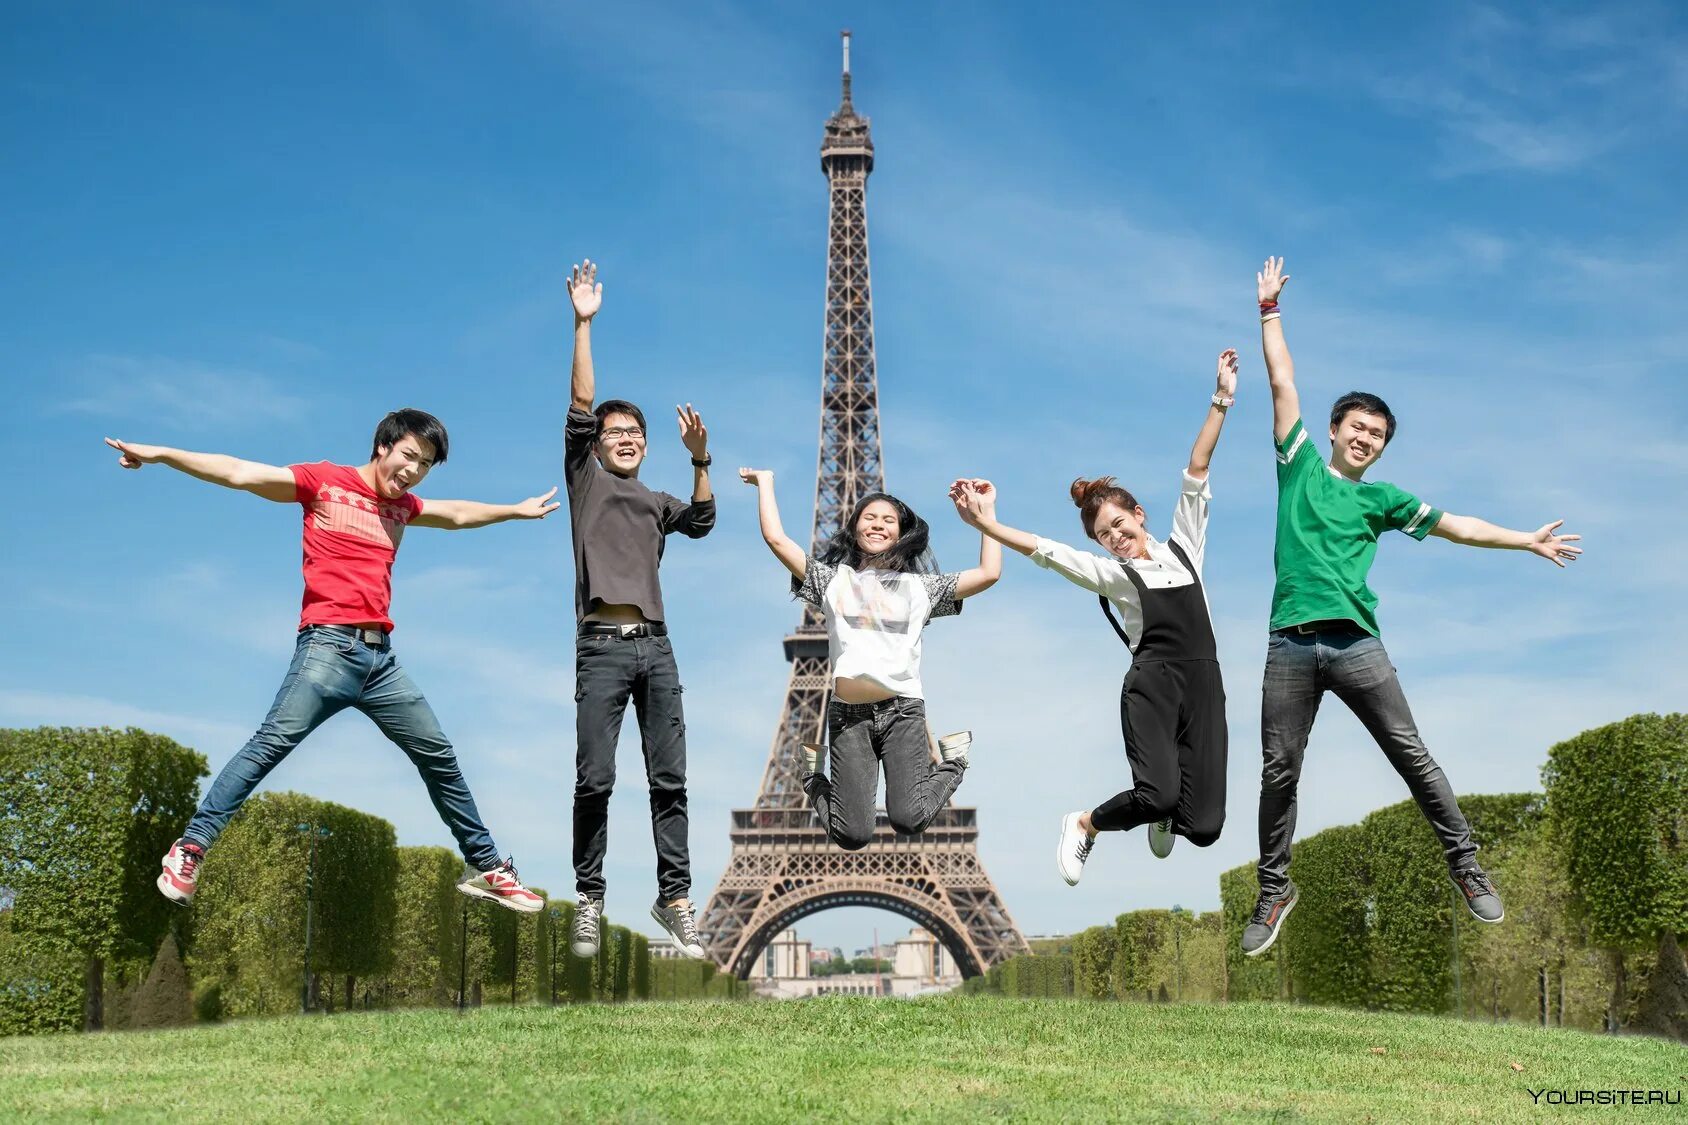 Работа французов. Молодежь Франции. Французские студенты. Франция студенчество. Французы студенты.